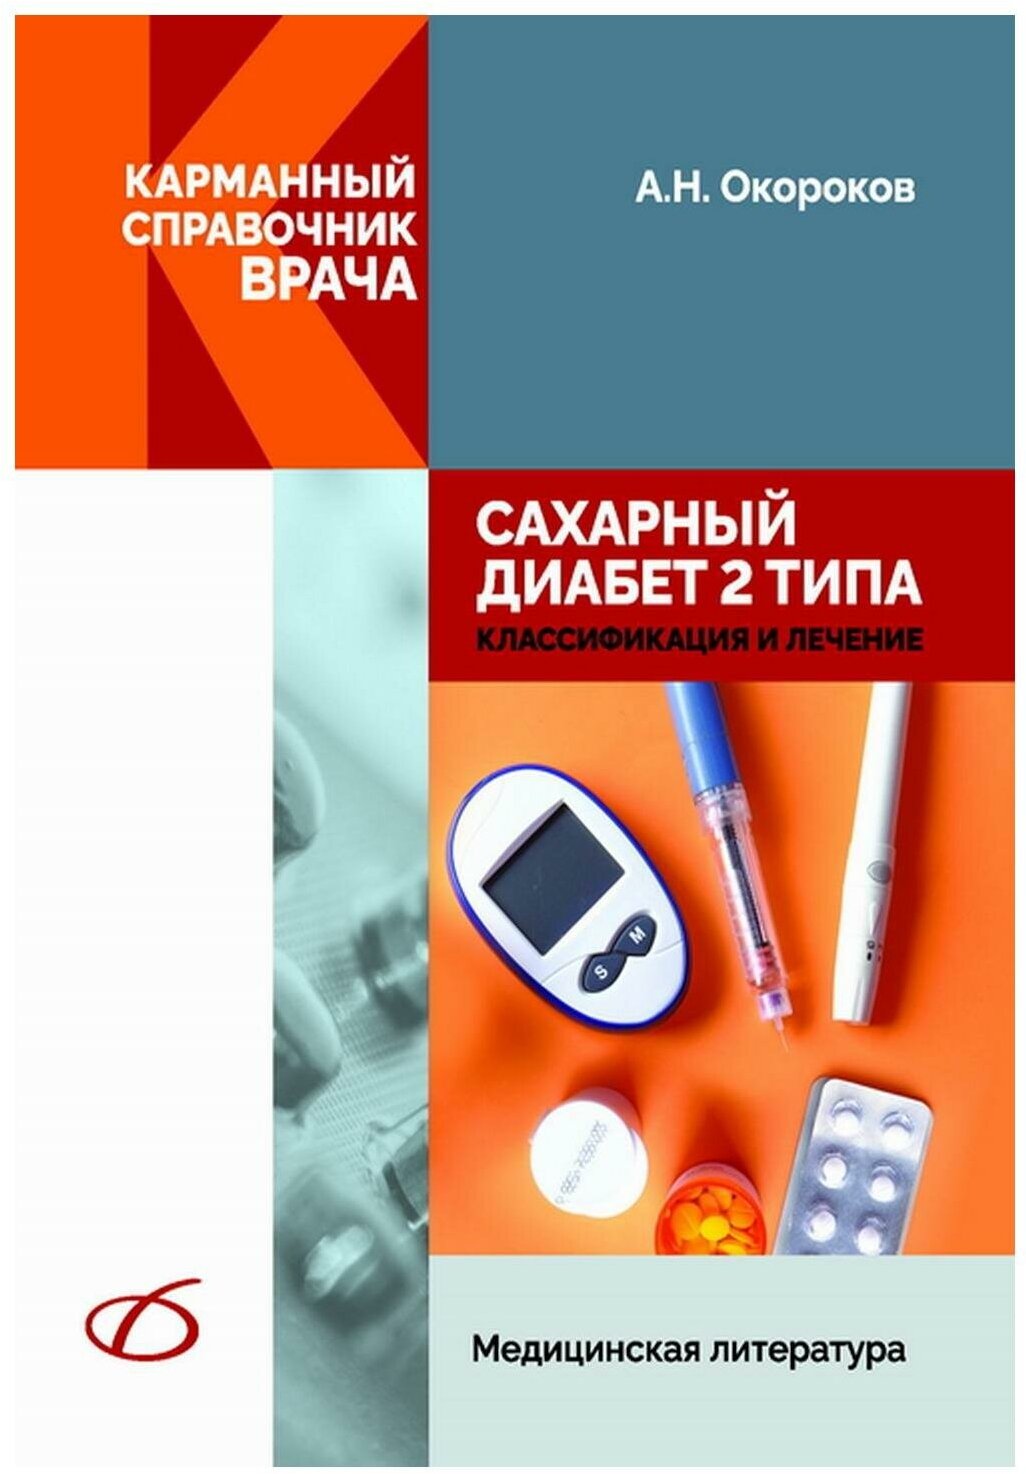 Окороков Александр Николаевич "Сахарный диабет 2 типа. Классификация и лечение"